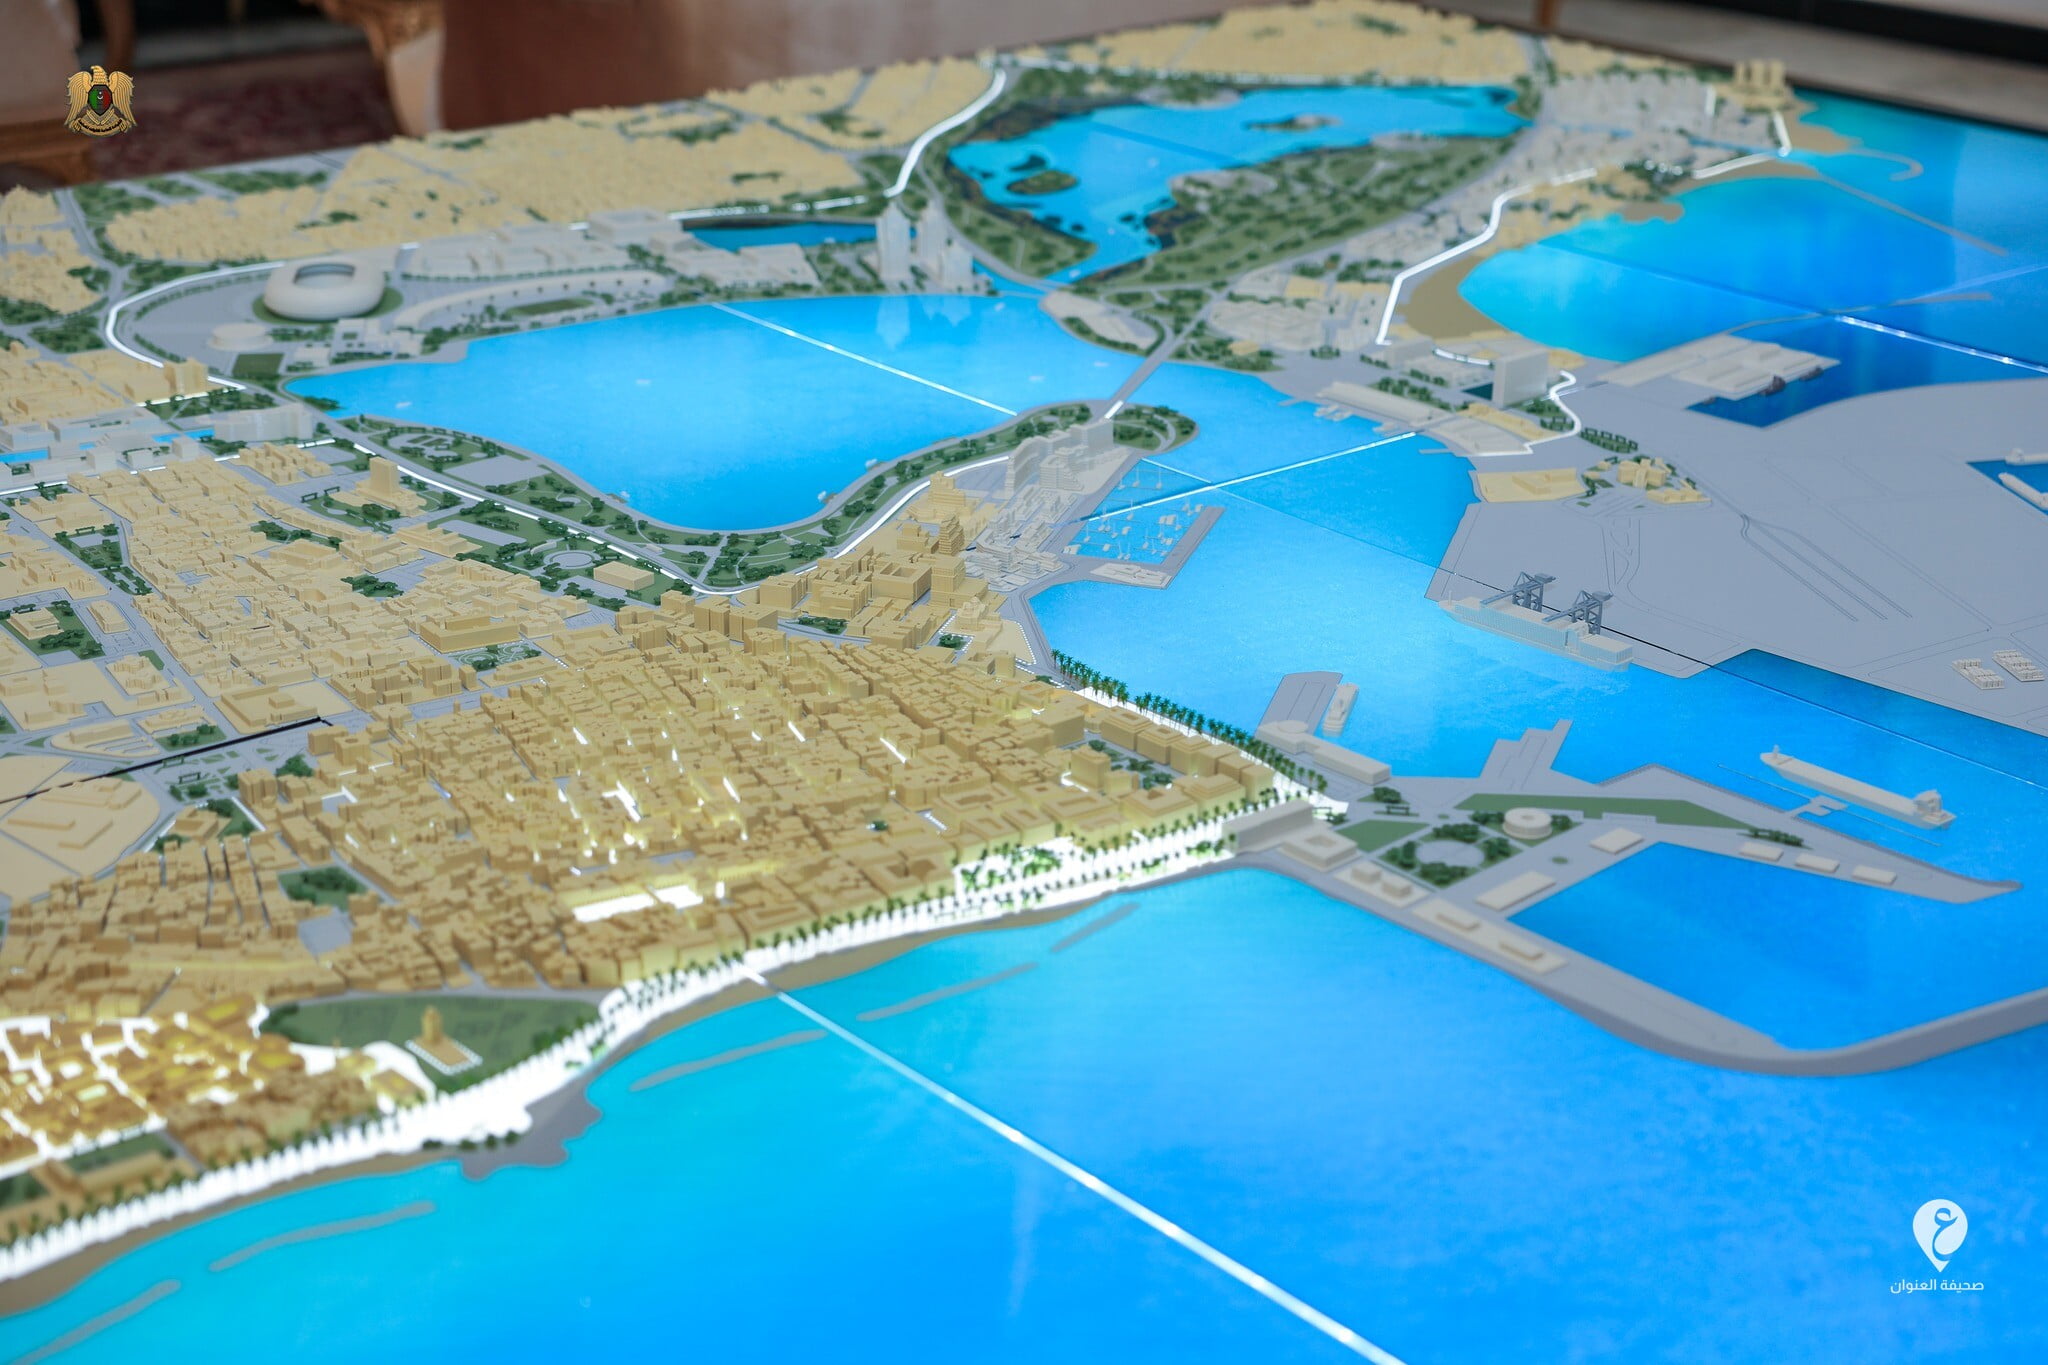 حفتر يؤكد على ضرورة تنفيذ المُخطط الحضاري لمدينة بنغازي وفقاً للشروط الهندسية والفنية - 355294861 590363826609580 1276036691059833504 n